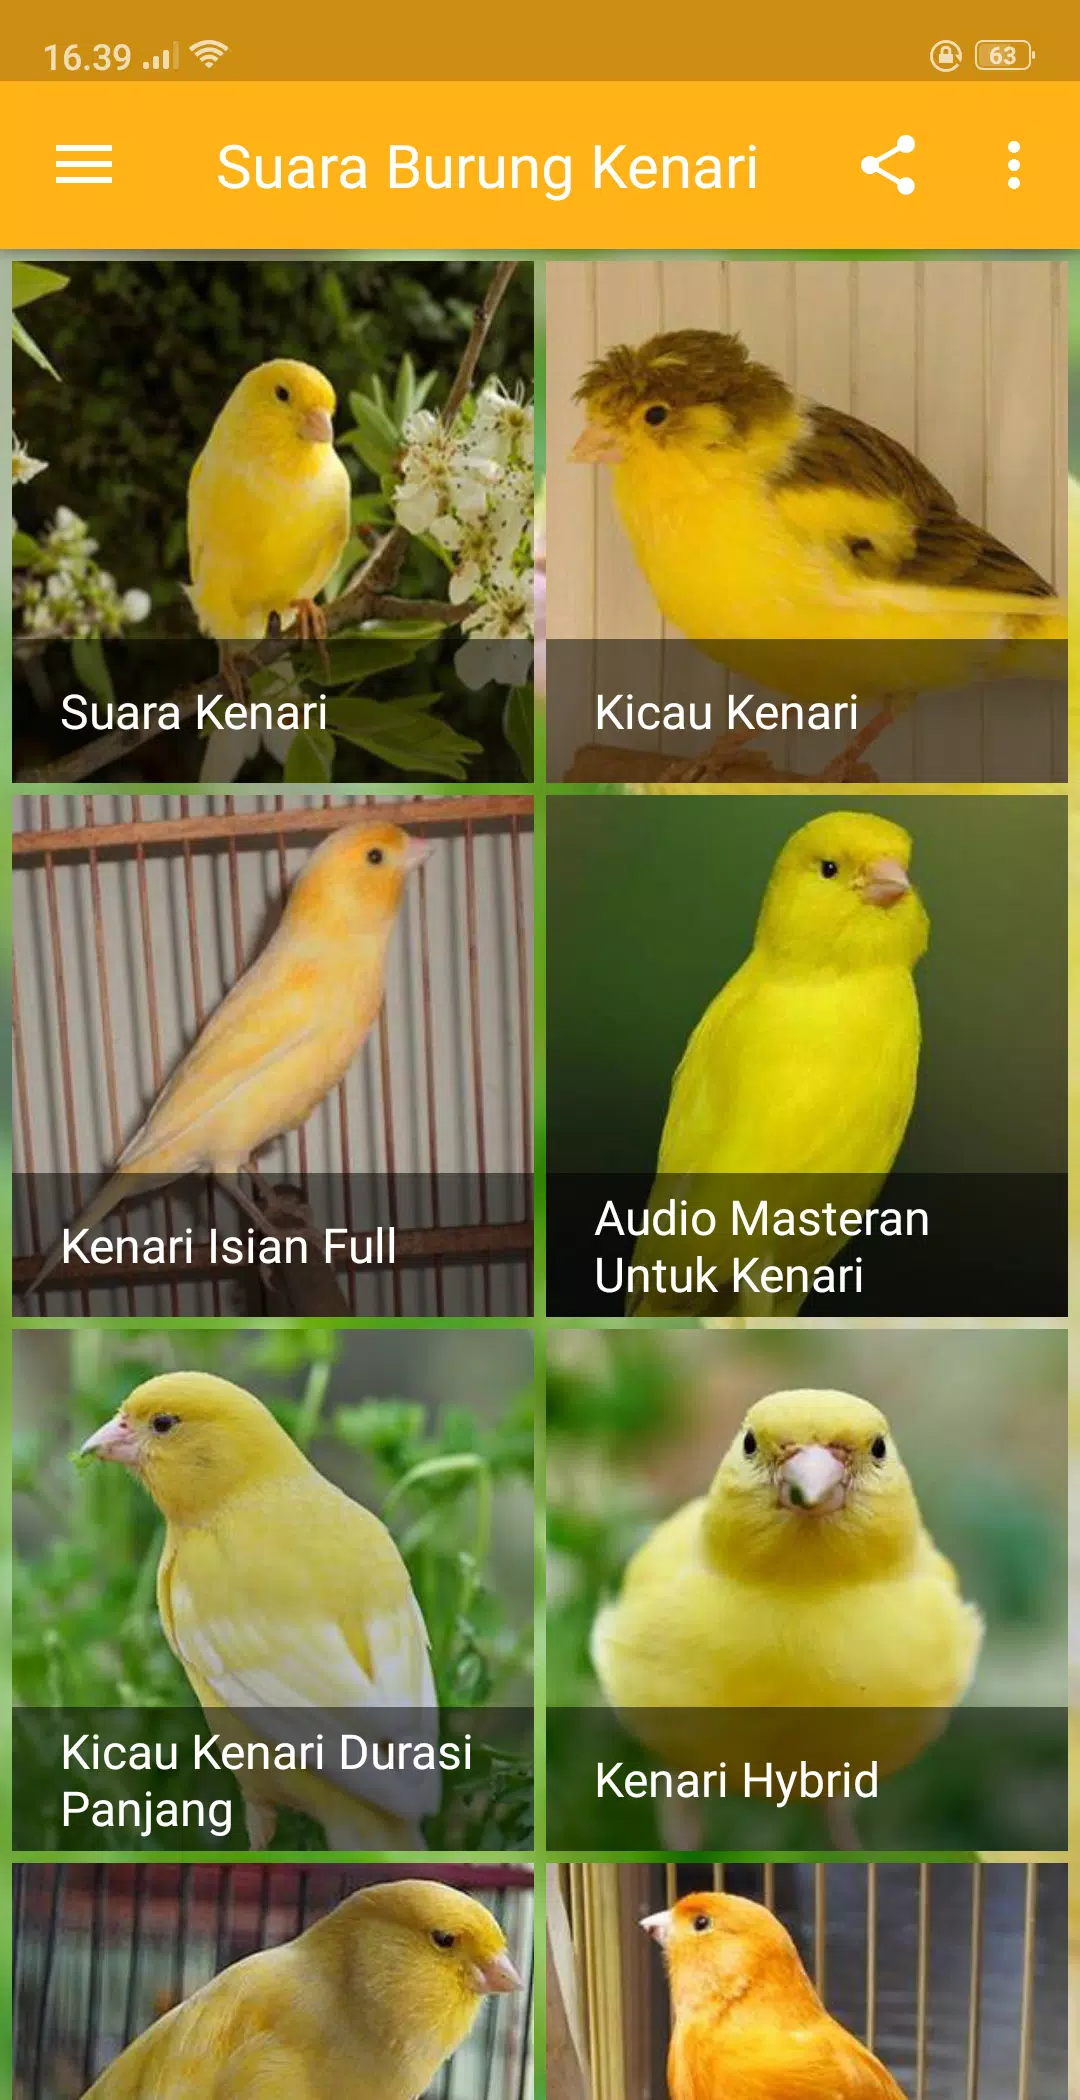 Kicau Suara Burung Kenari MP3 Offline APK untuk Unduhan Android